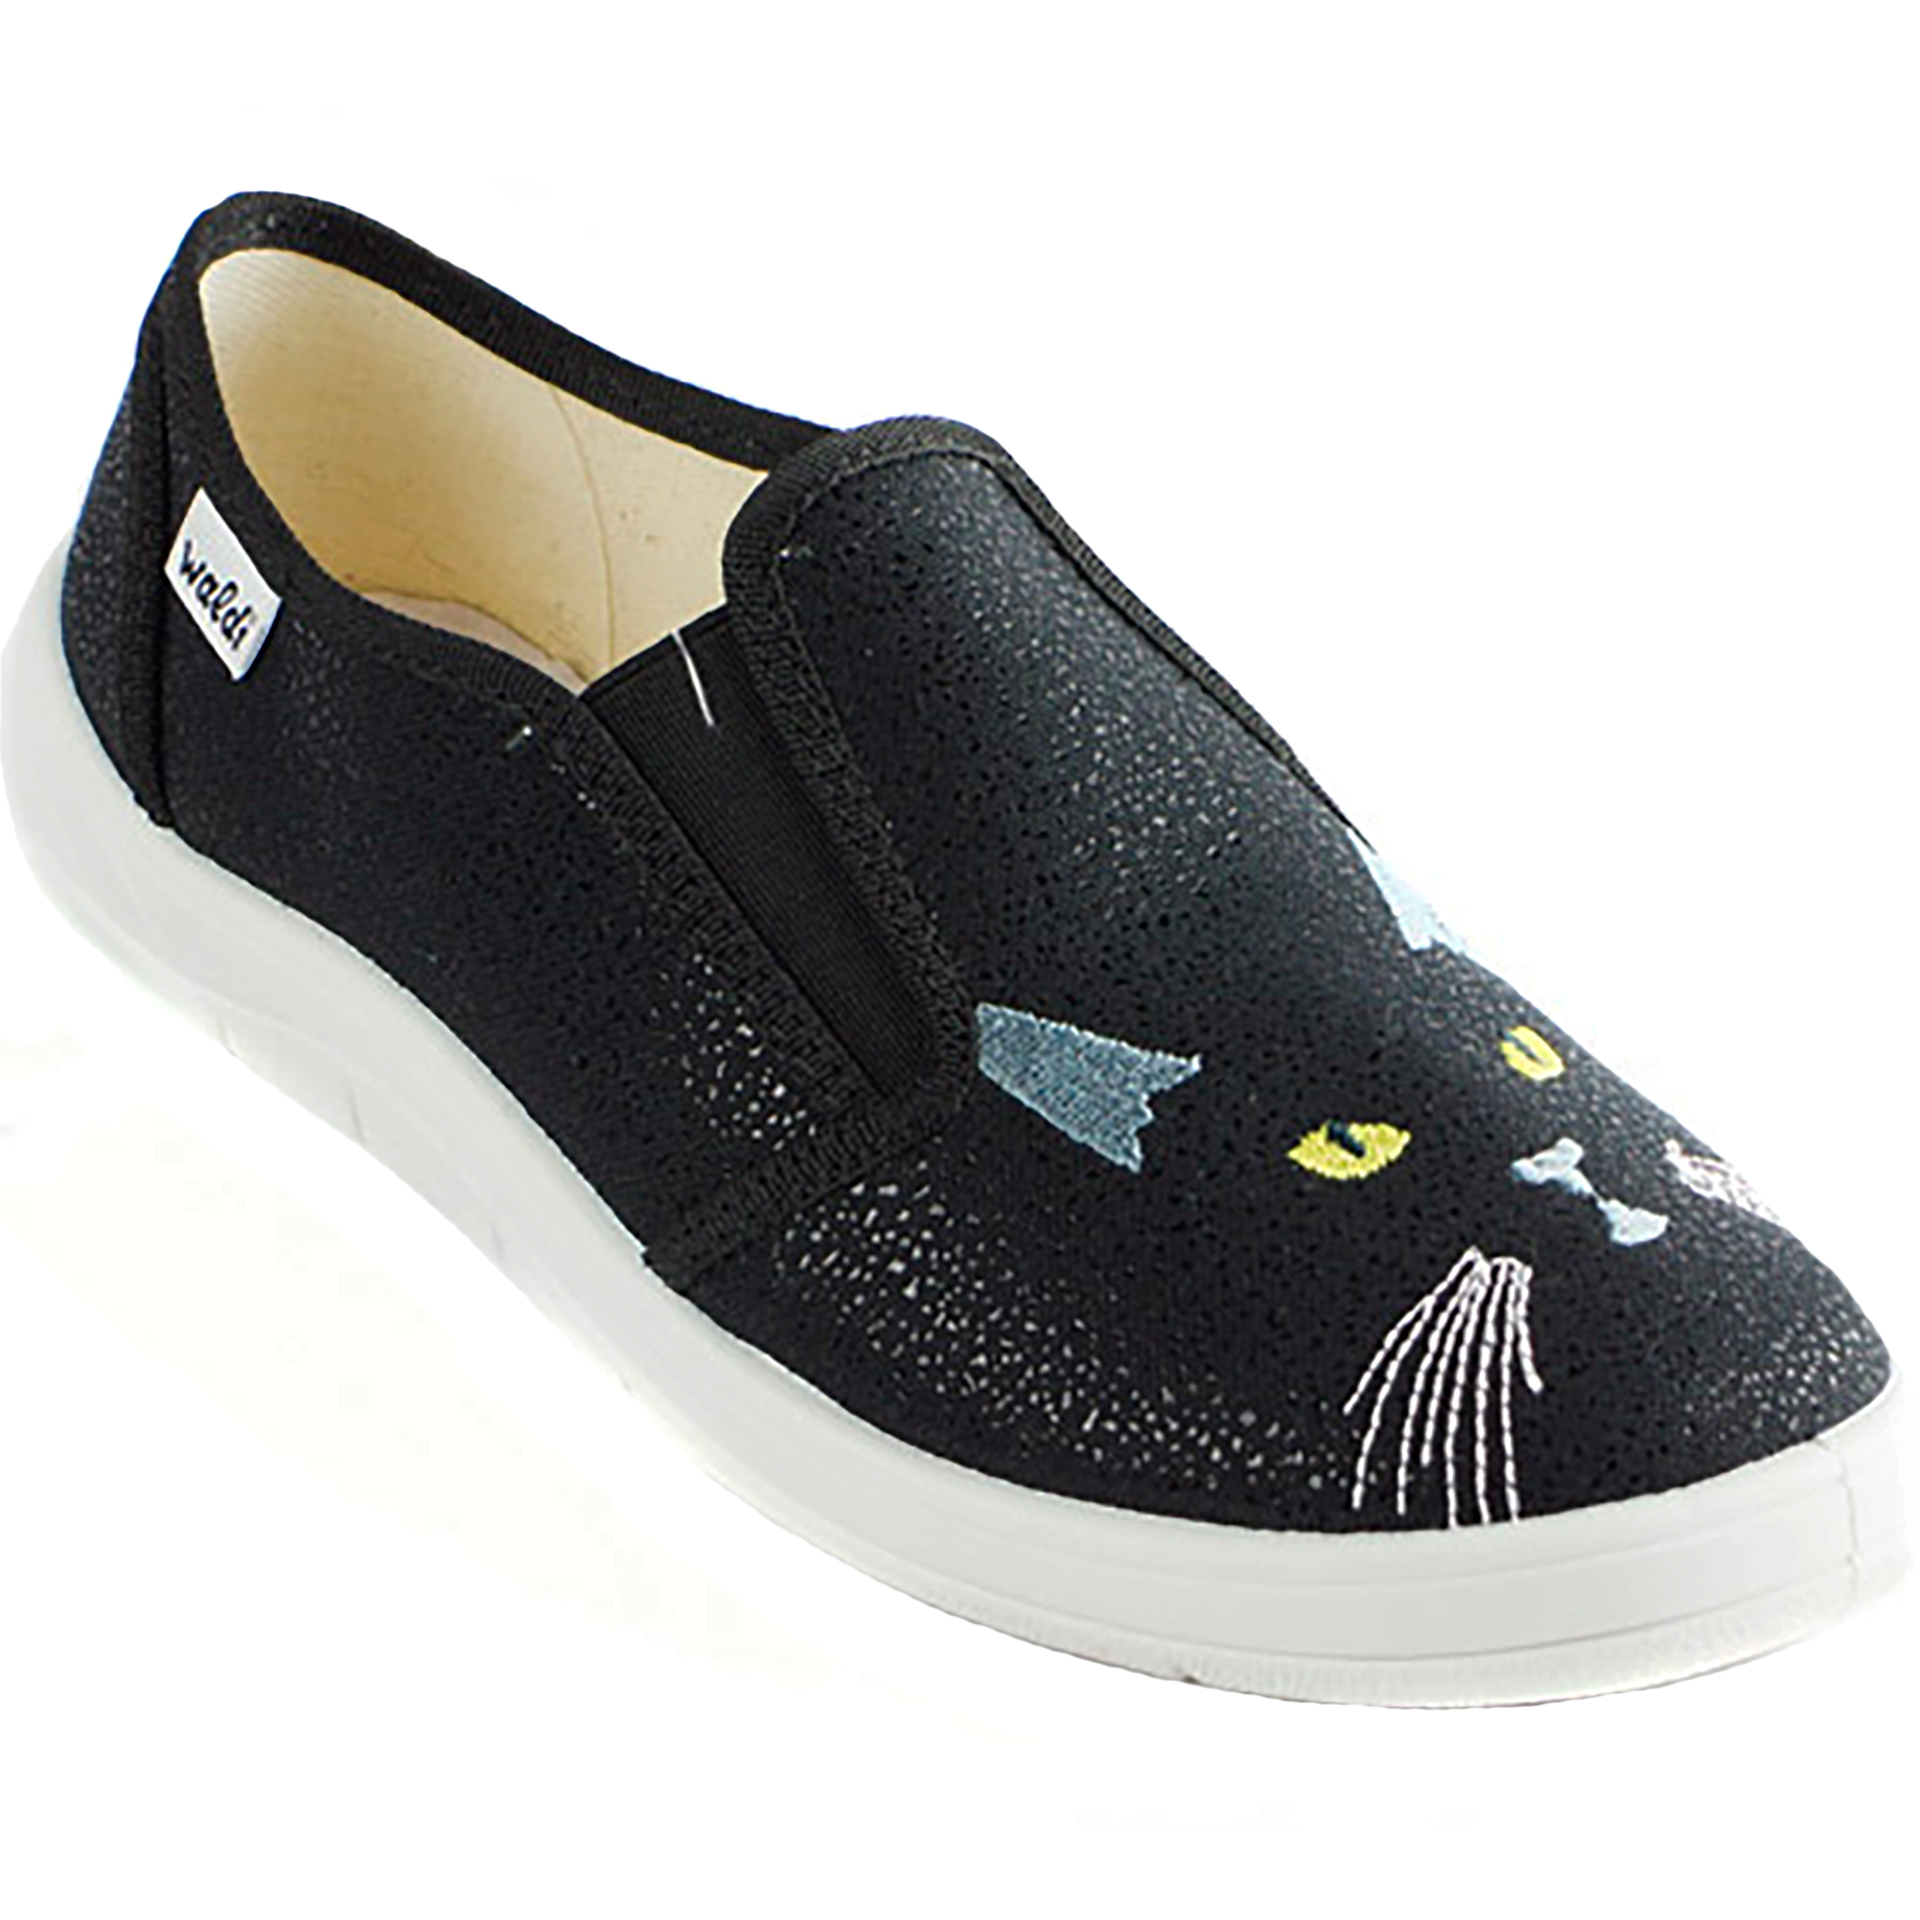 Текстильная обувь для девочек Waldi Мокасины Черный кот(2253) цвет Черный 30-36 размеры – Sole Kids